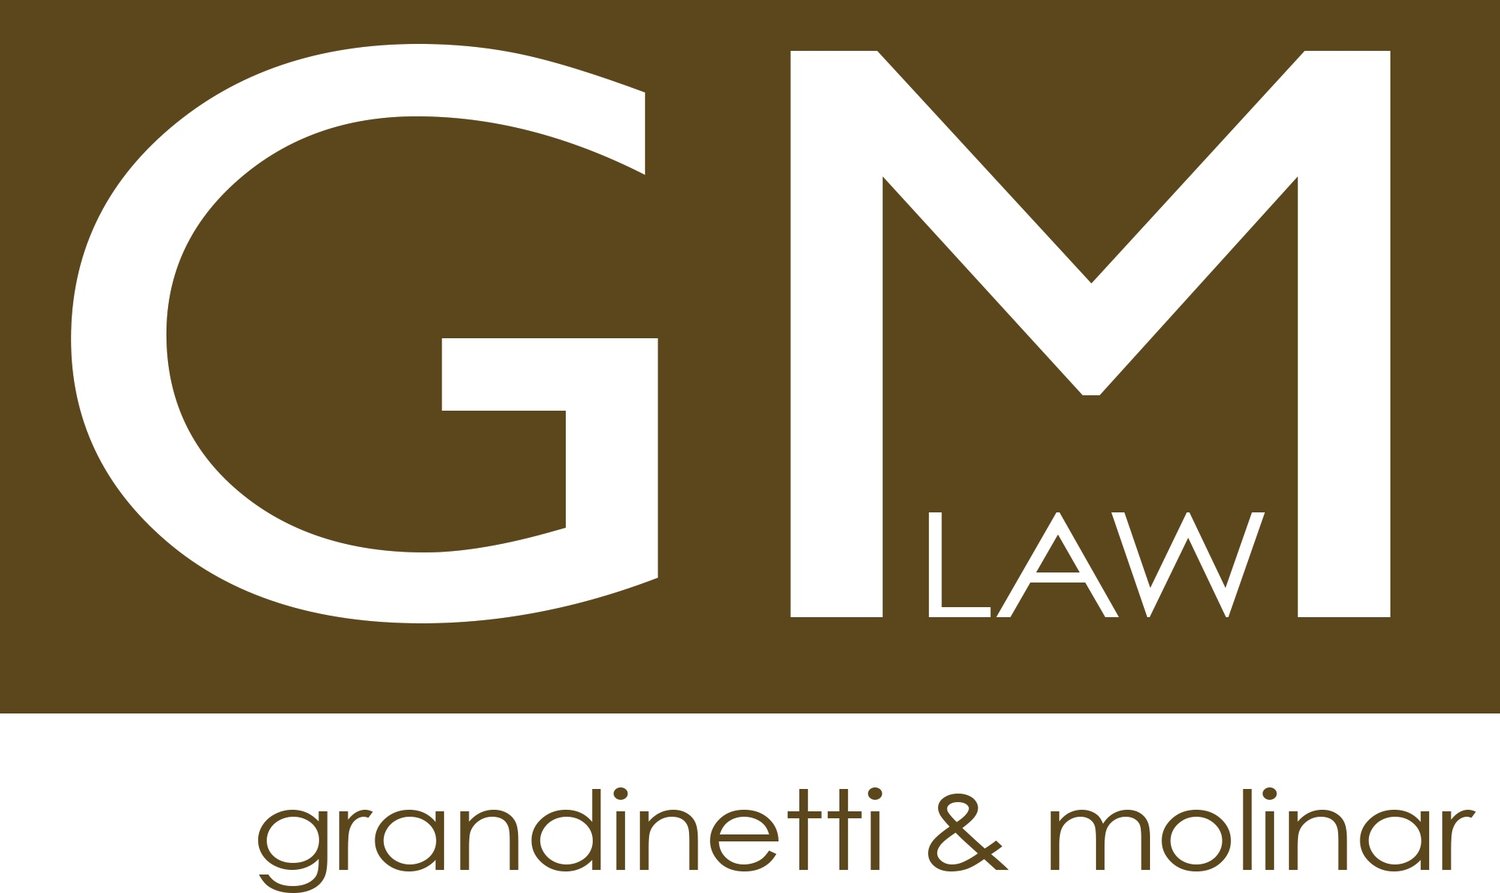 Grandinetti & Molinar Law